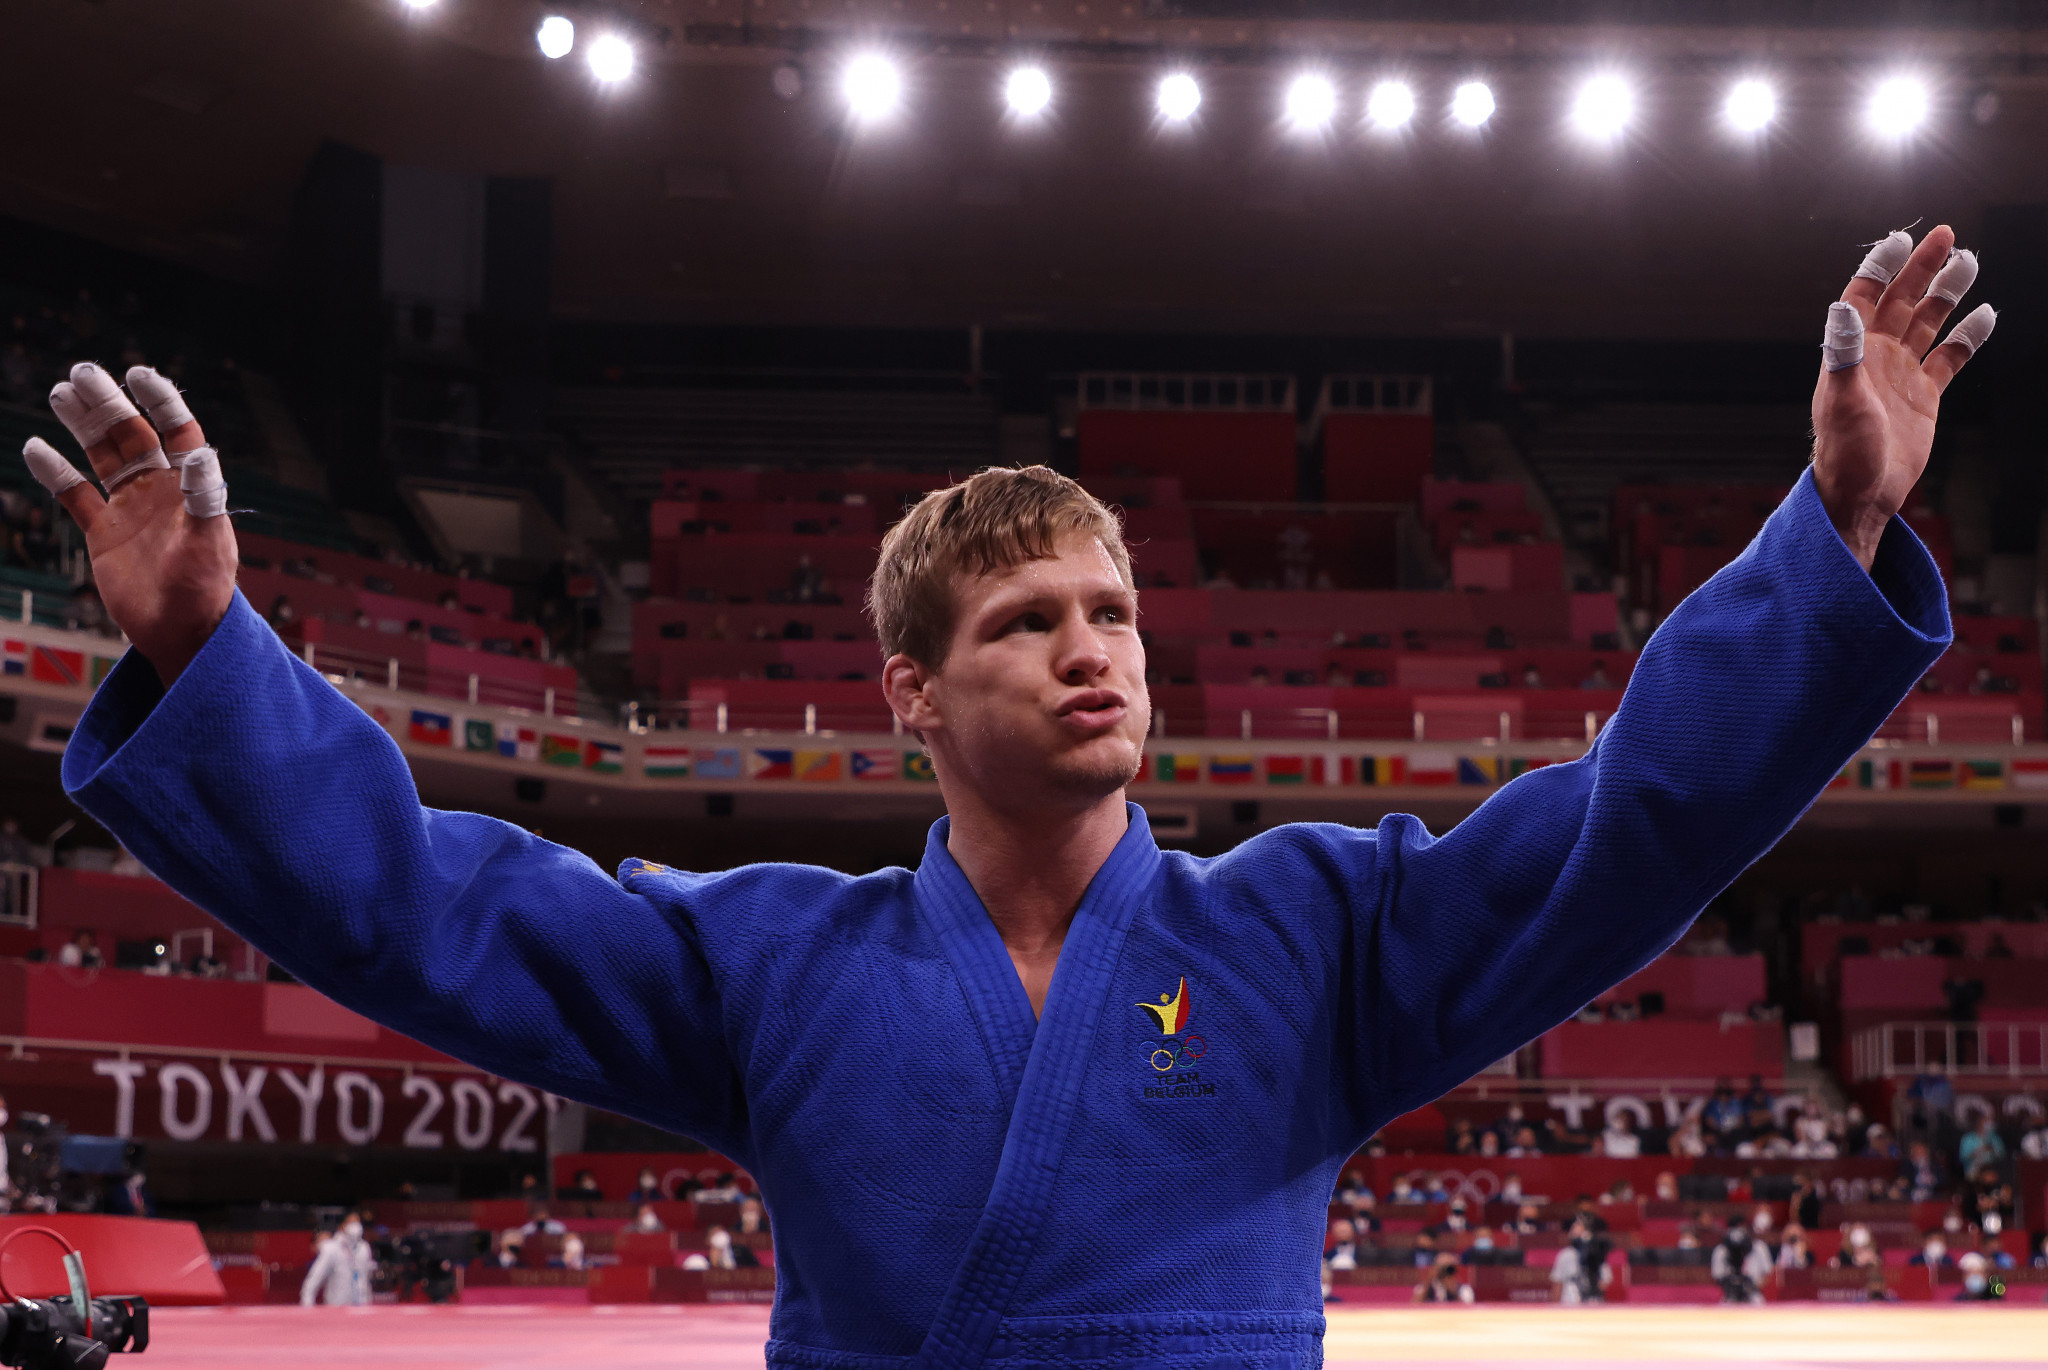 Portugal Grand Prix to open 2022 World  Judo Tour